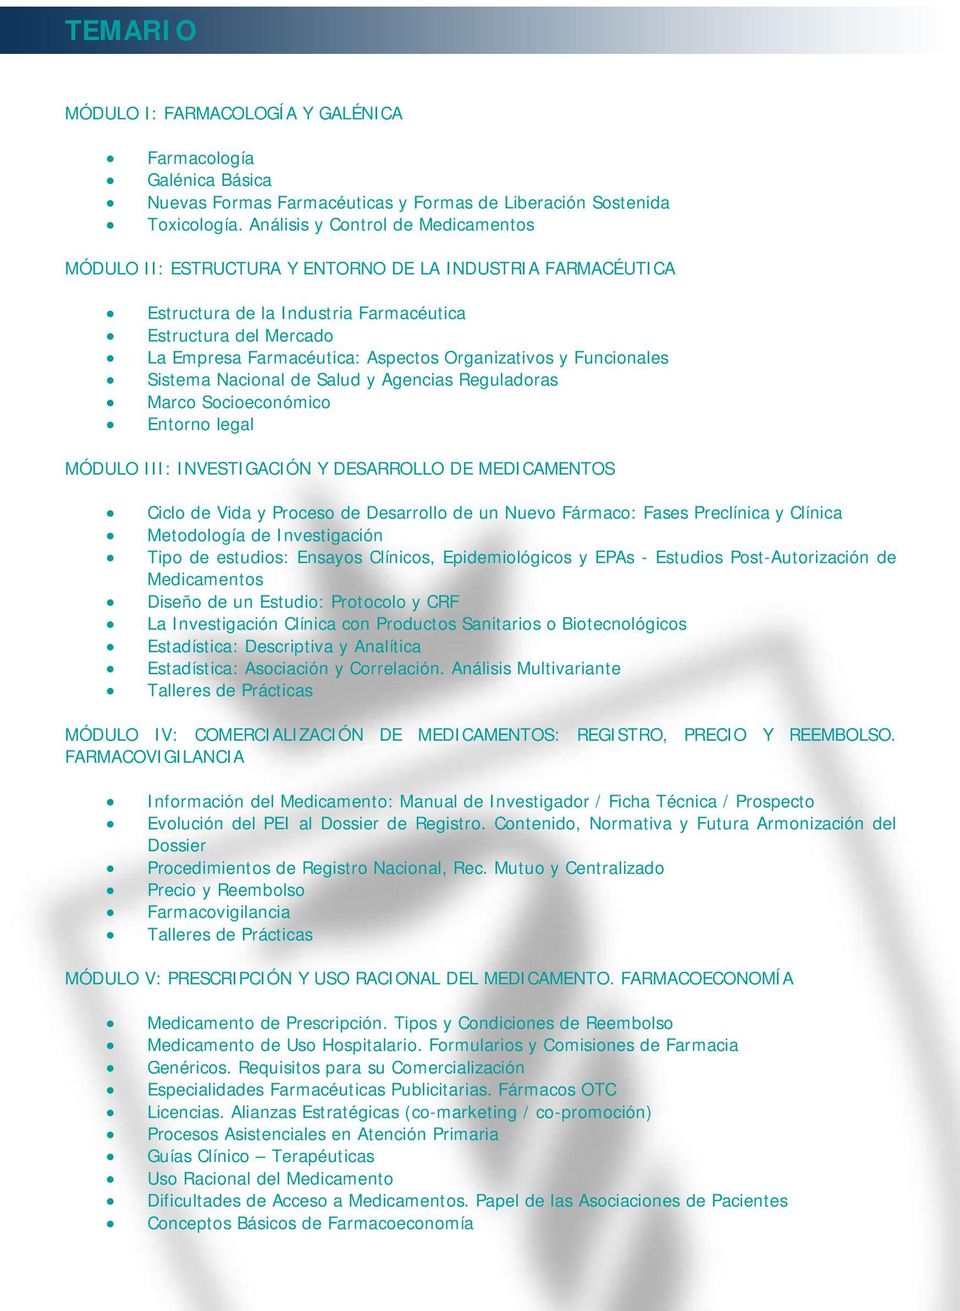 Organizativos y Funcionales Sistema Nacional de Salud y Agencias Reguladoras Marco Socioeconómico Entorno legal MÓDULO III: INVESTIGACIÓN Y DESARROLLO DE MEDICAMENTOS Ciclo de Vida y Proceso de